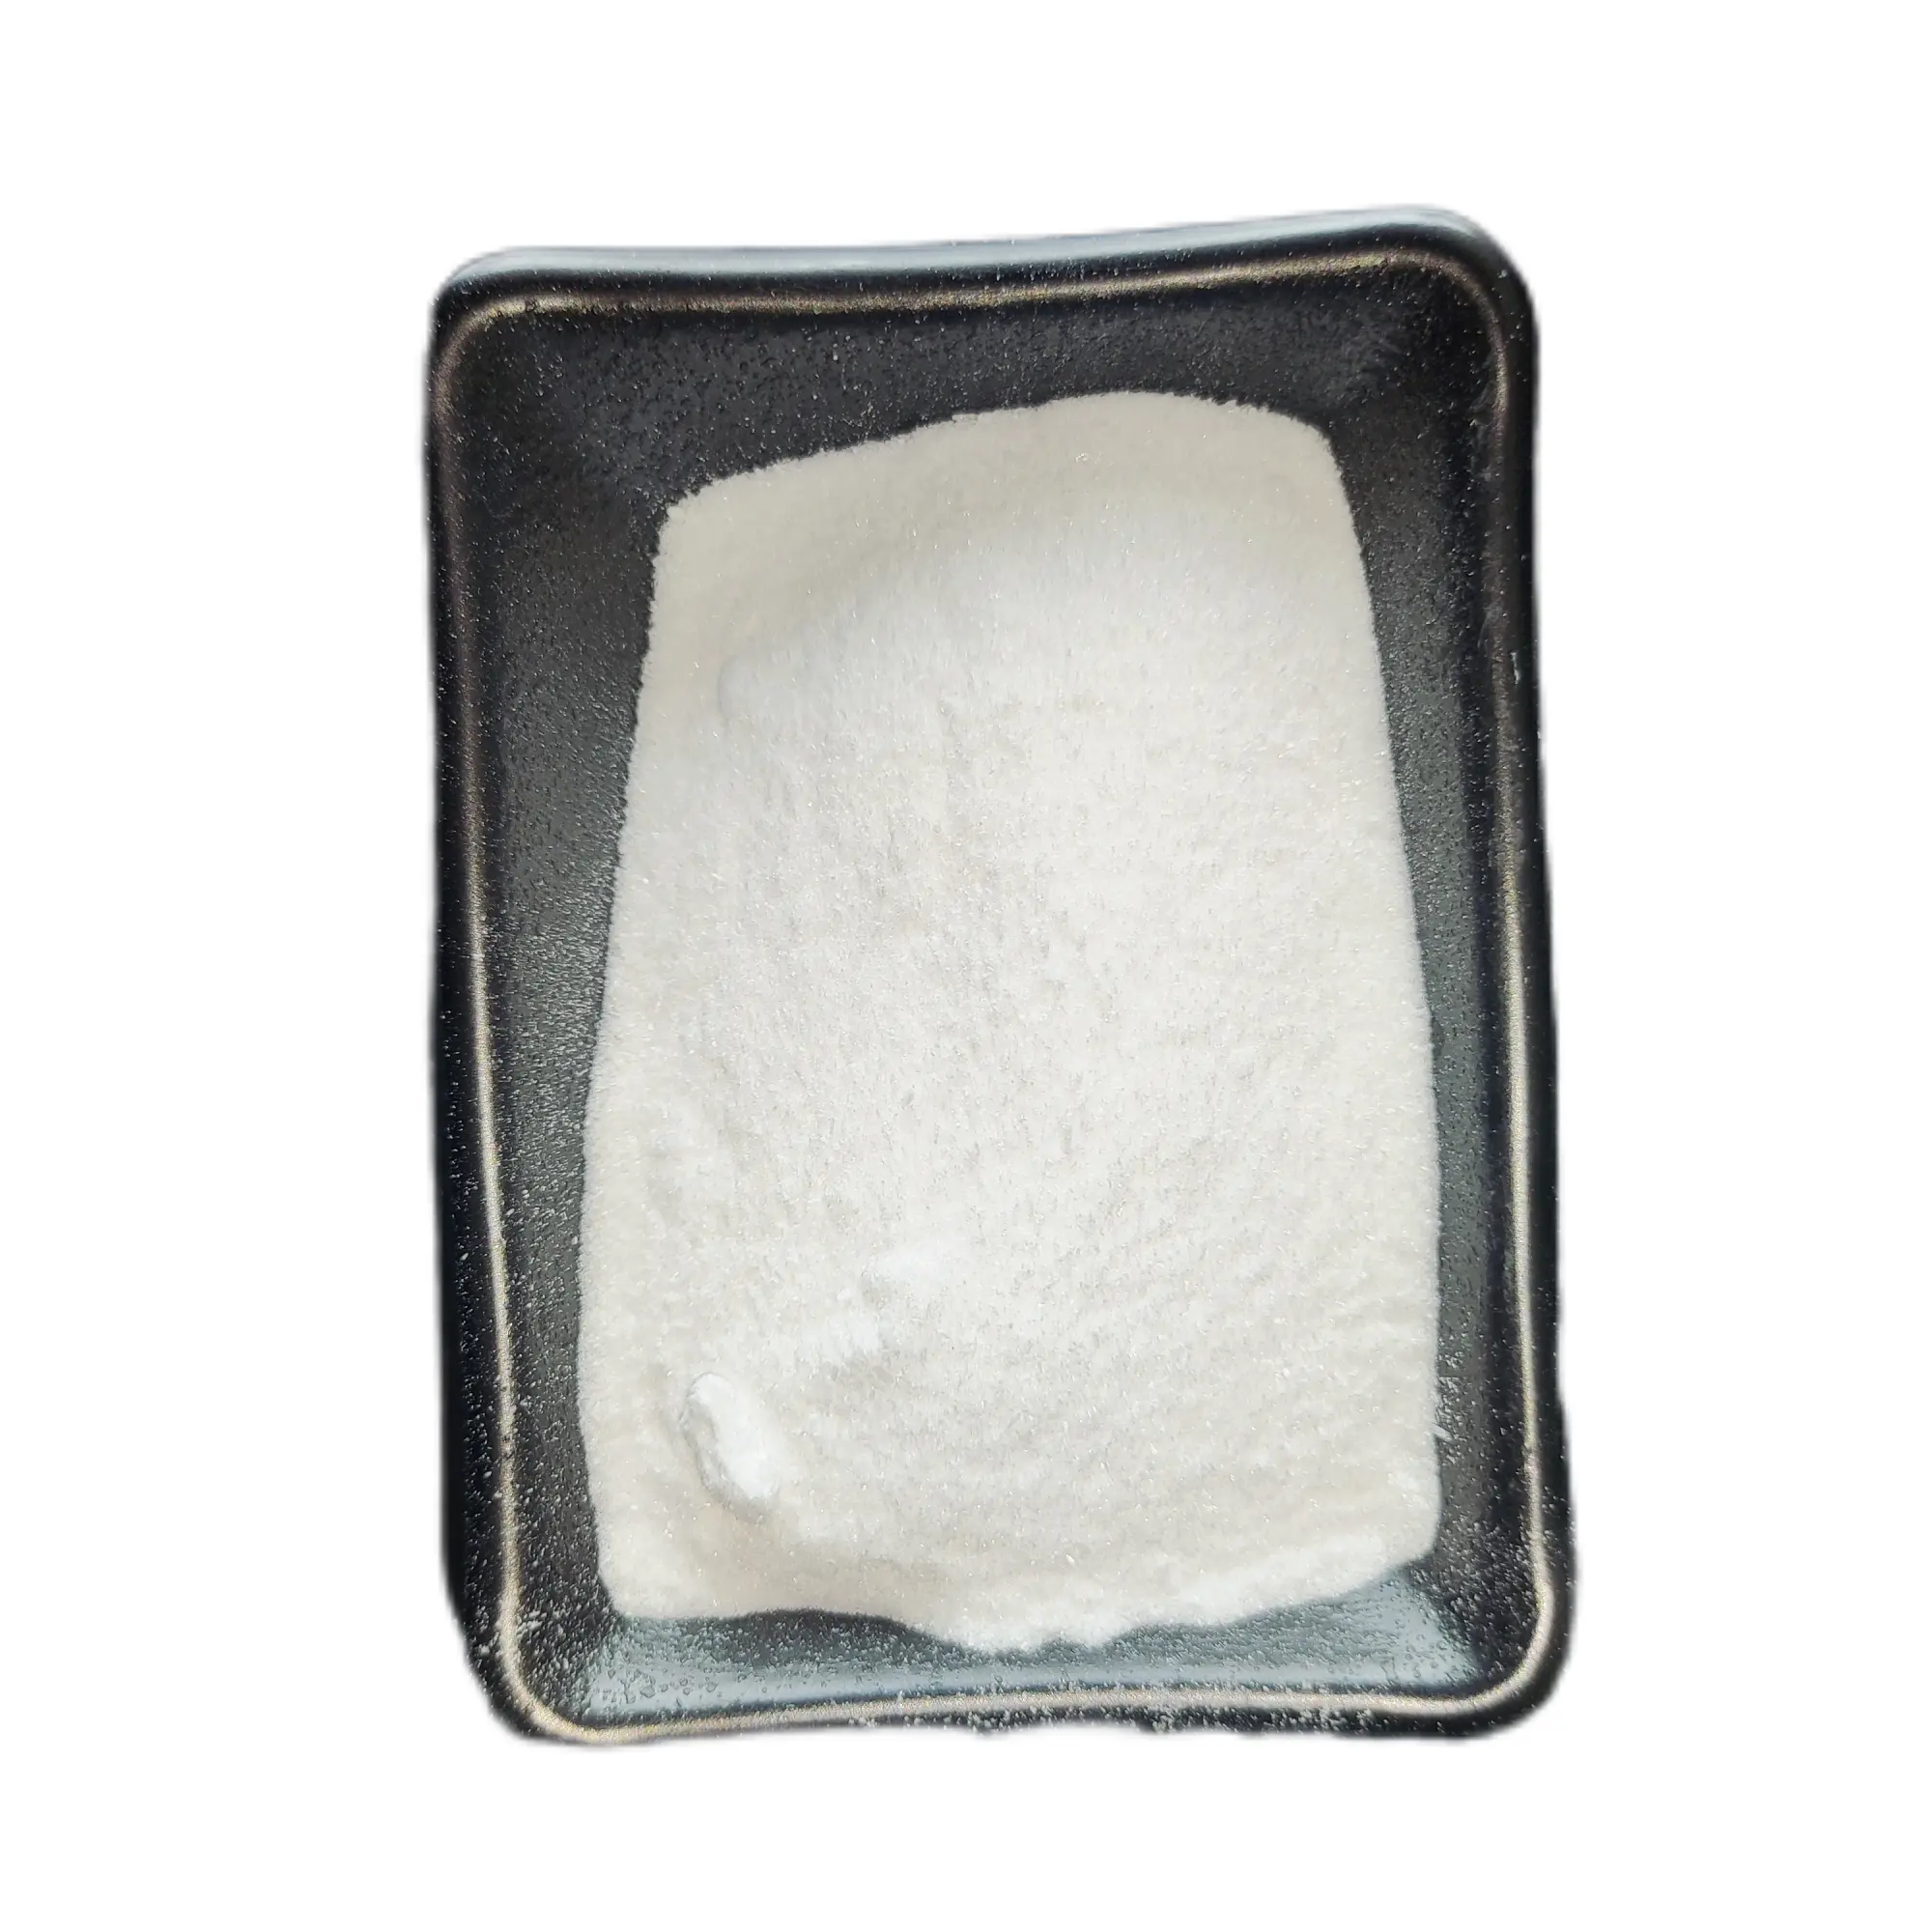 Bahan kimia organik asam shimik CAS 138. 00-59-0 bubuk putih dengan stok lokal untuk dijual